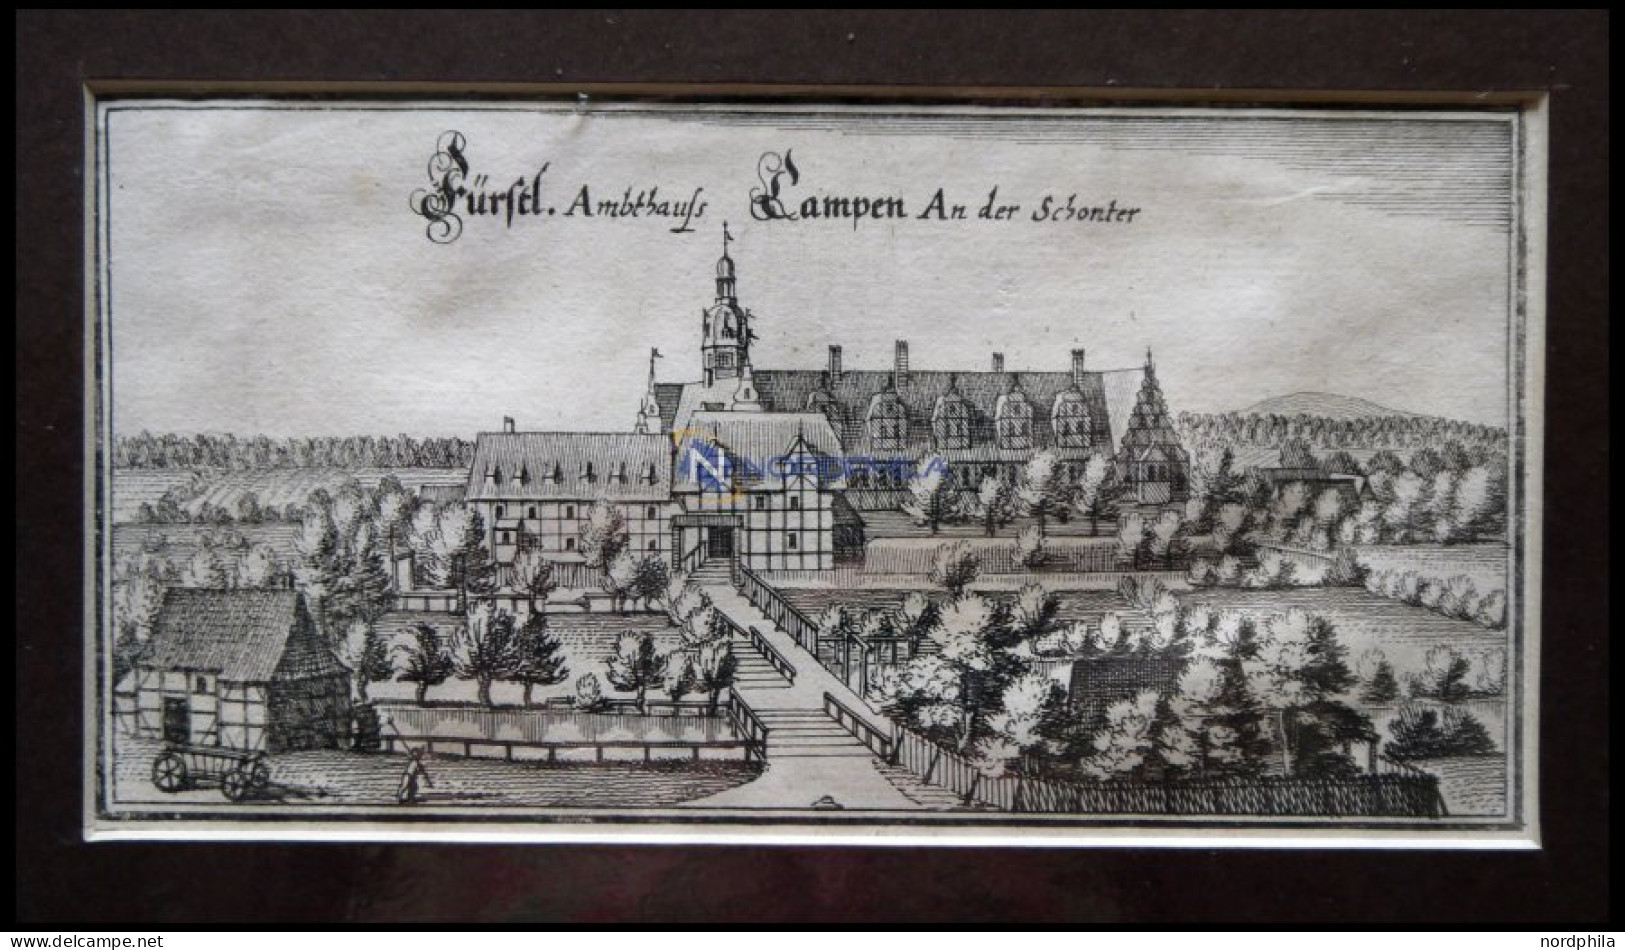 CAMPEN: Das Fürstliche Amtshaus An Der Schonter,Kupferstich Von Merian Um 1645 - Prints & Engravings